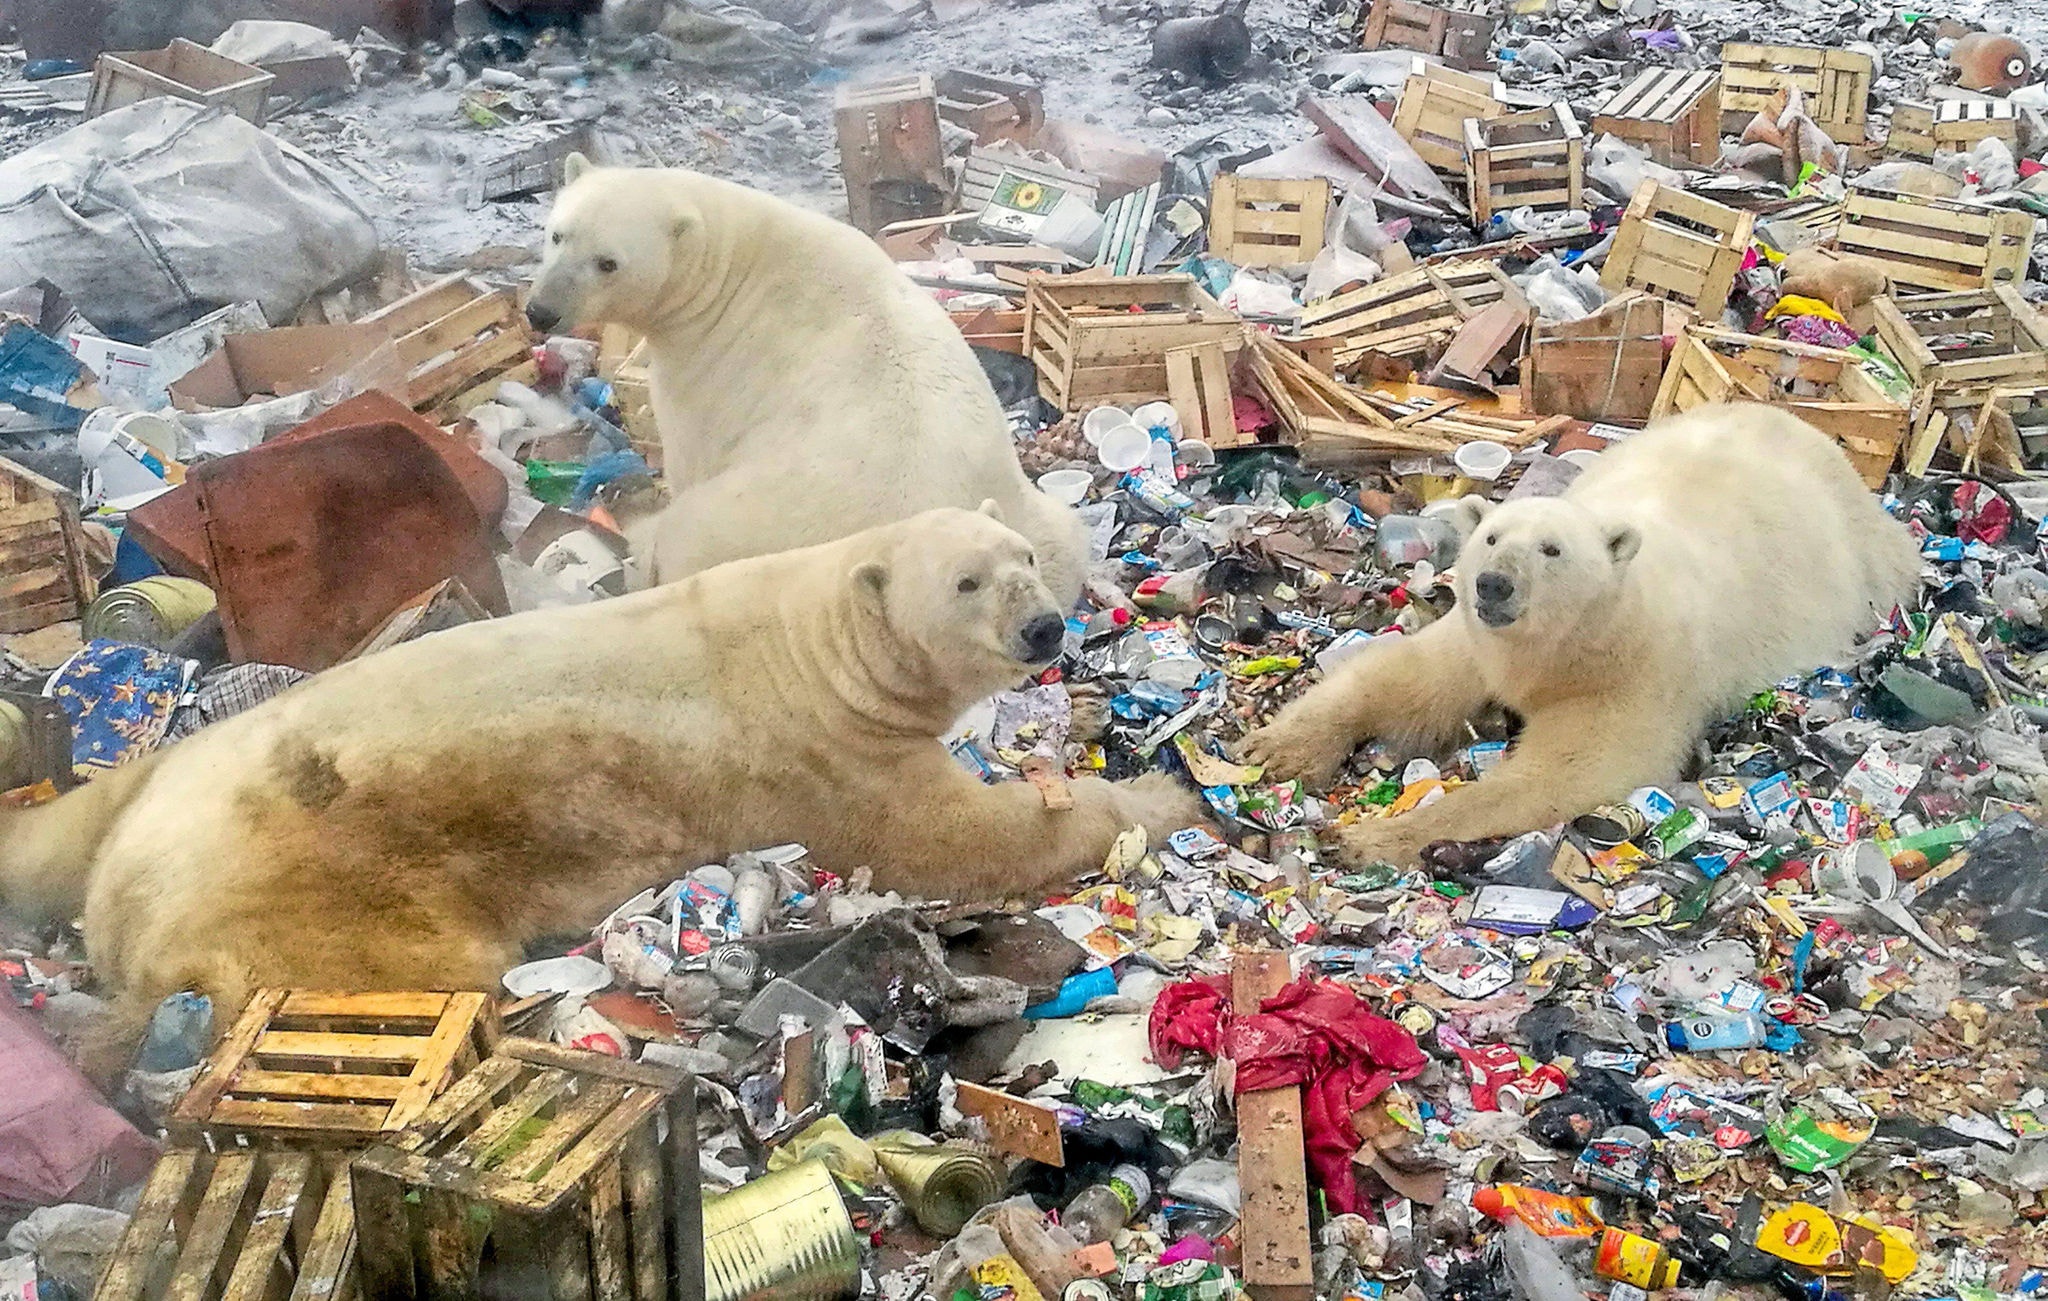 Com derretimento de geleiras do Ártico, ursos polares invadiram vila no Norte da Rússia em busca de comida